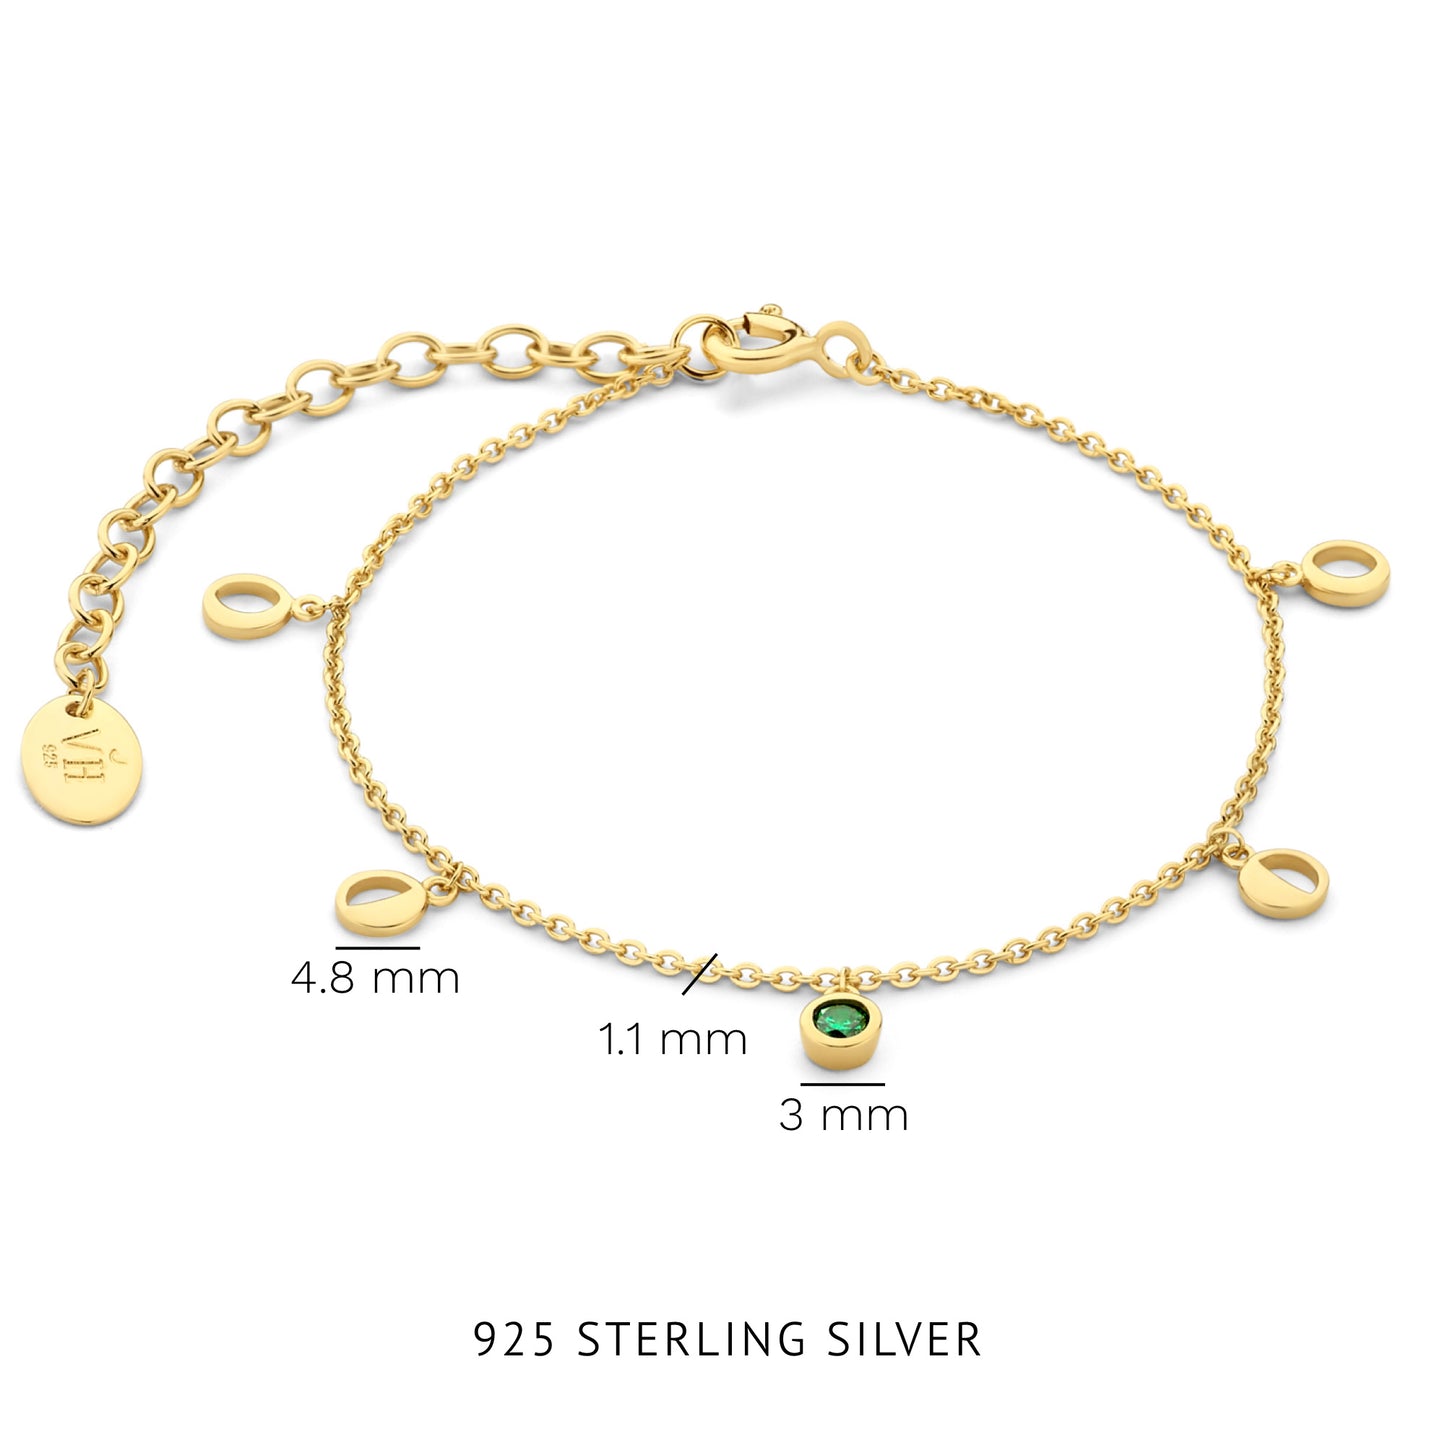 Luna bracciale in argento sterling 925 placcato oro con pietra zircone verde